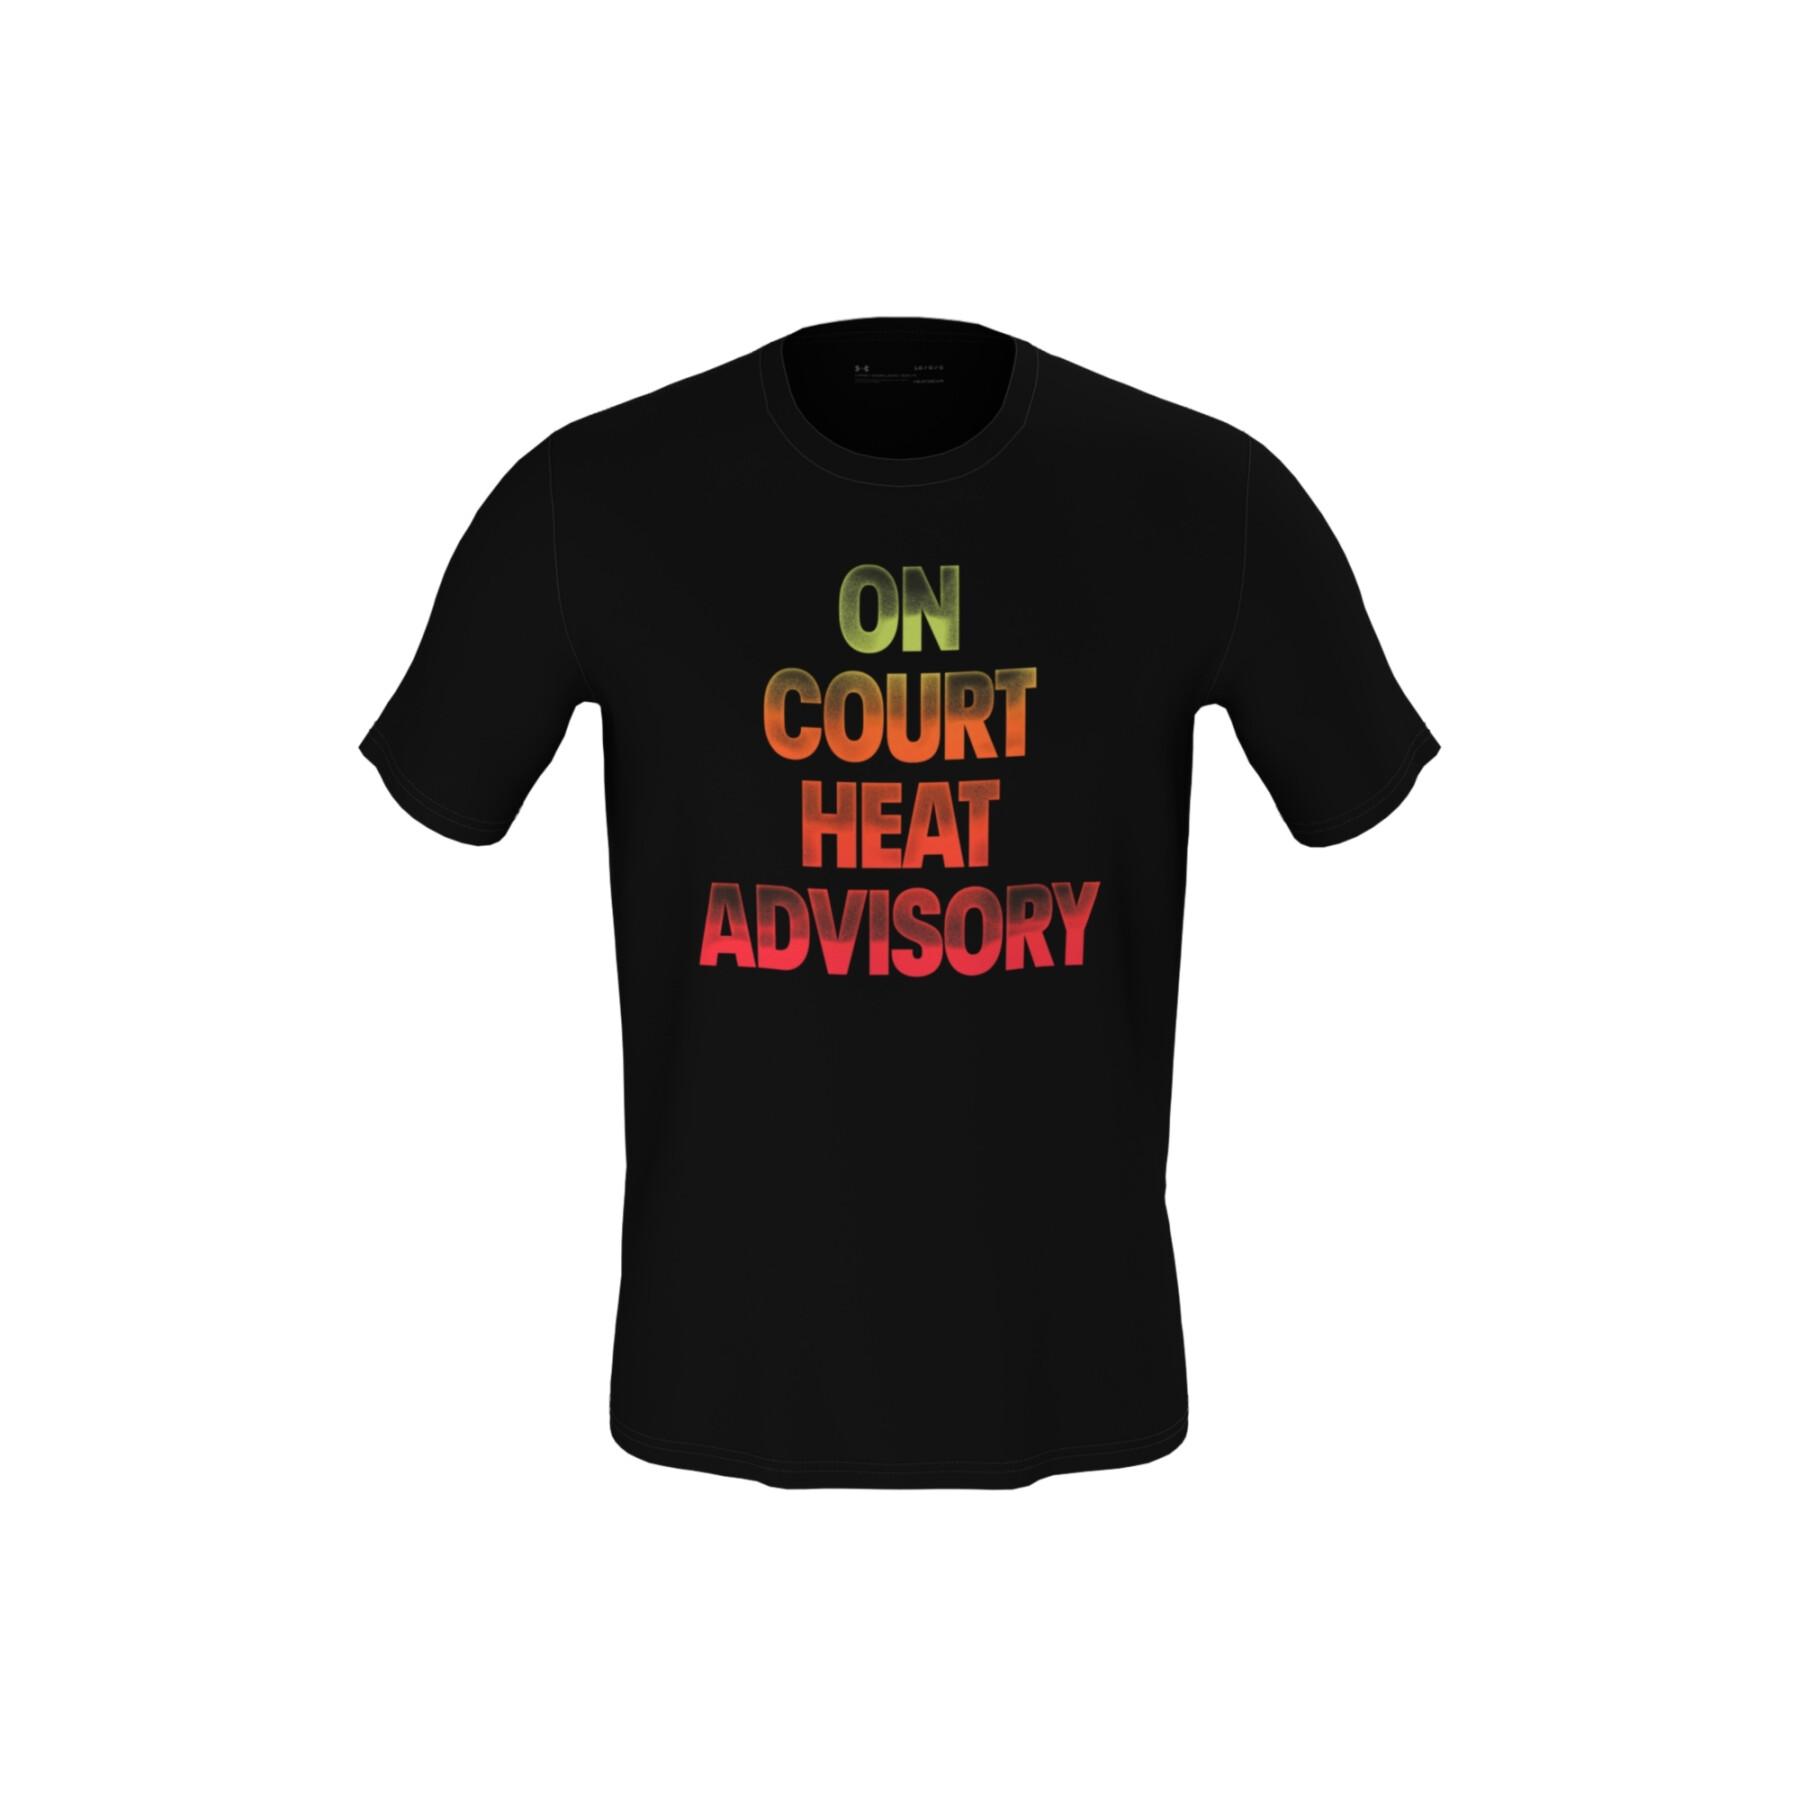 Koszulka Under Armour bball heat advisory